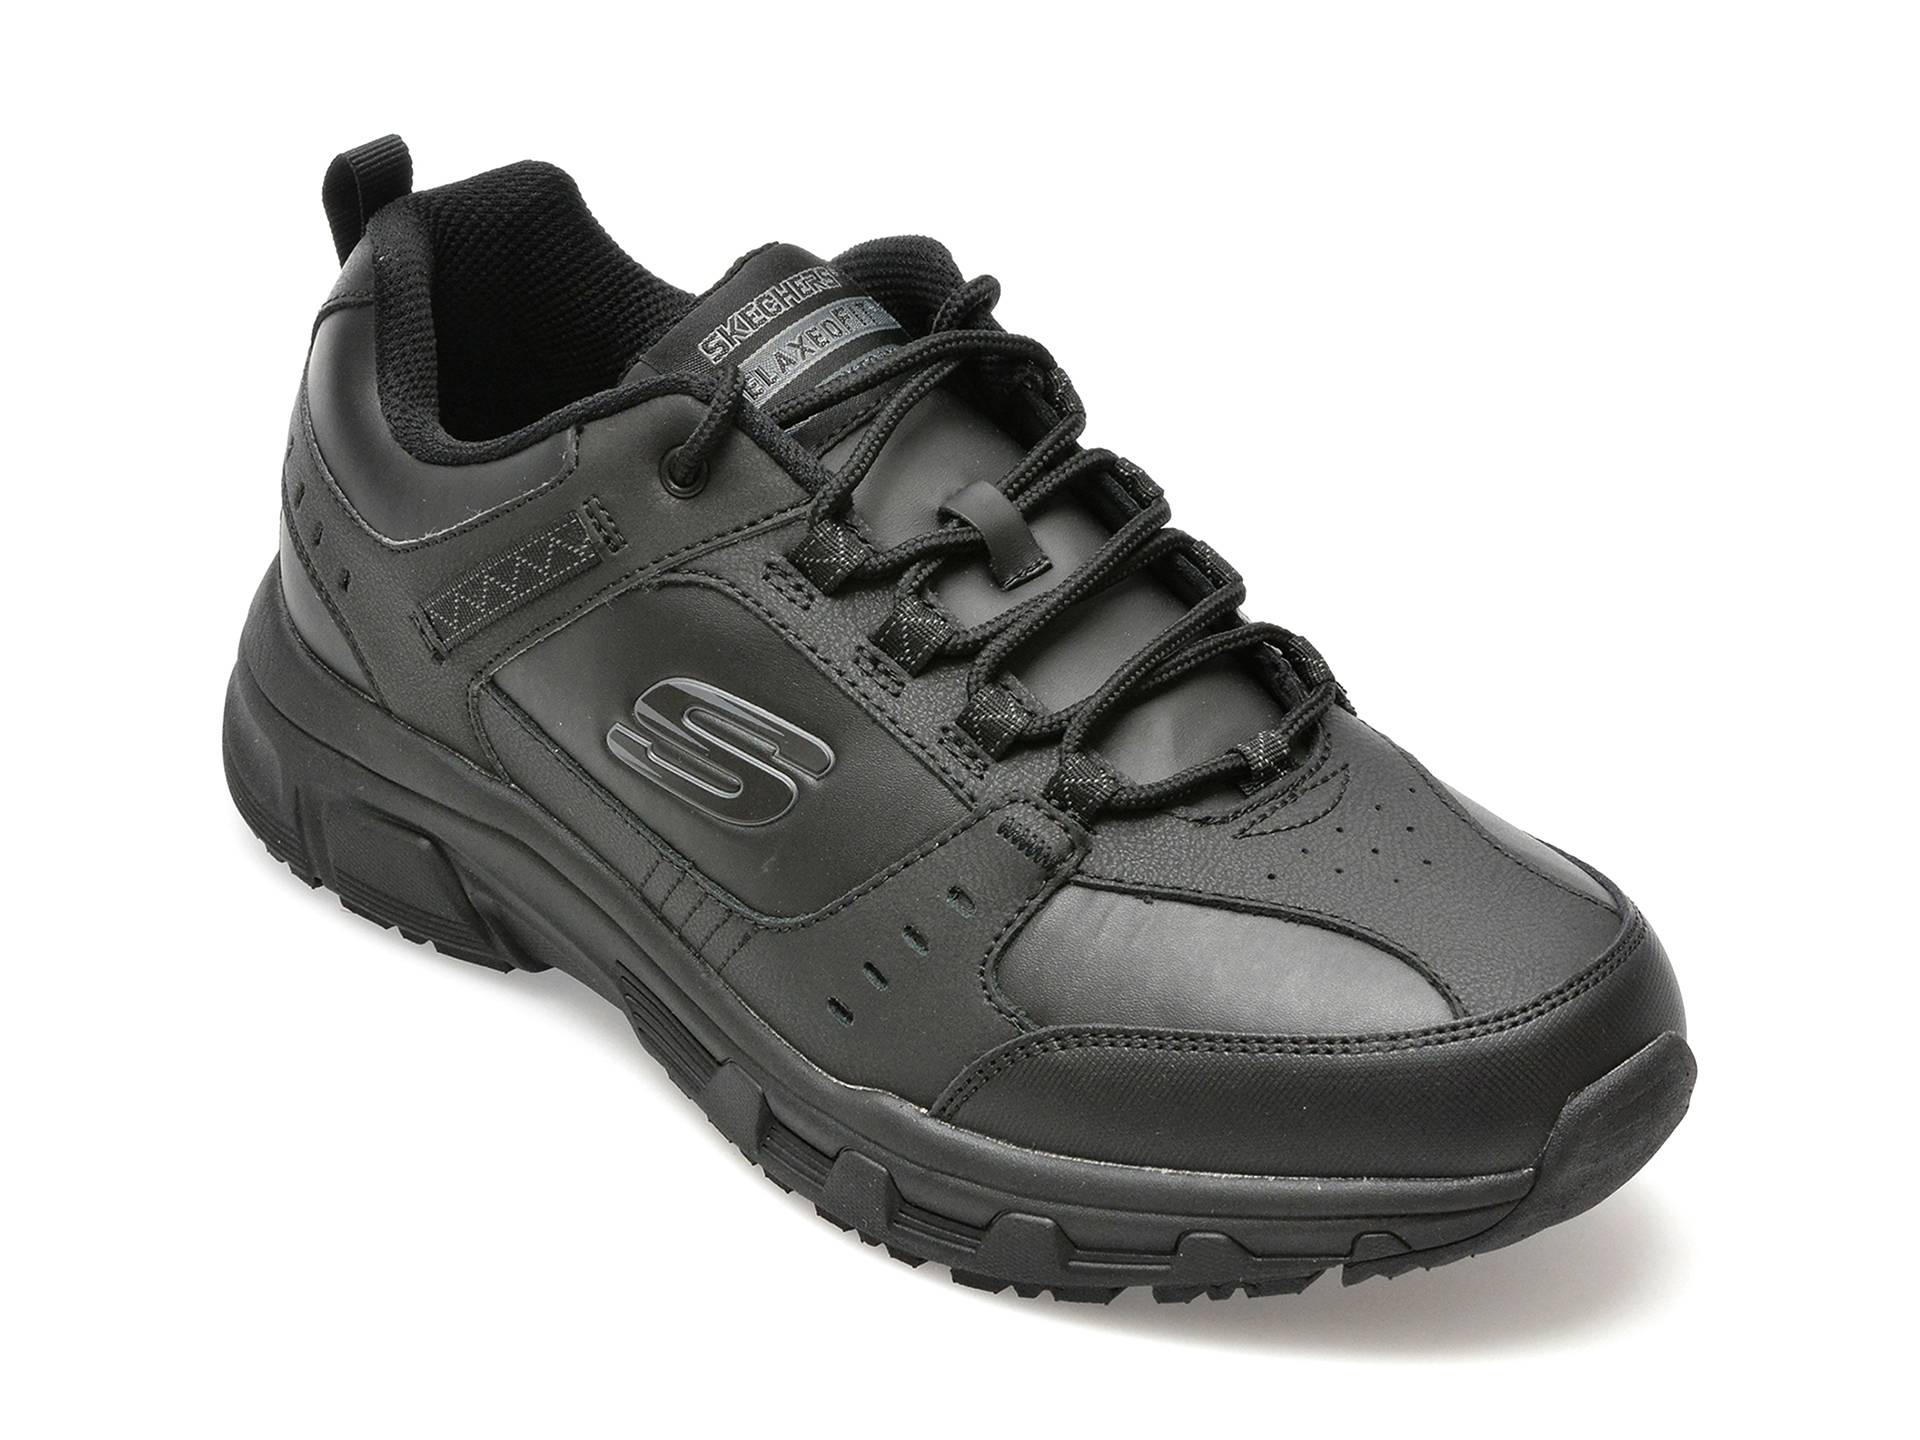 Pantofi SKECHERS negri, OAK CANYON-REDWICK, din piele naturala